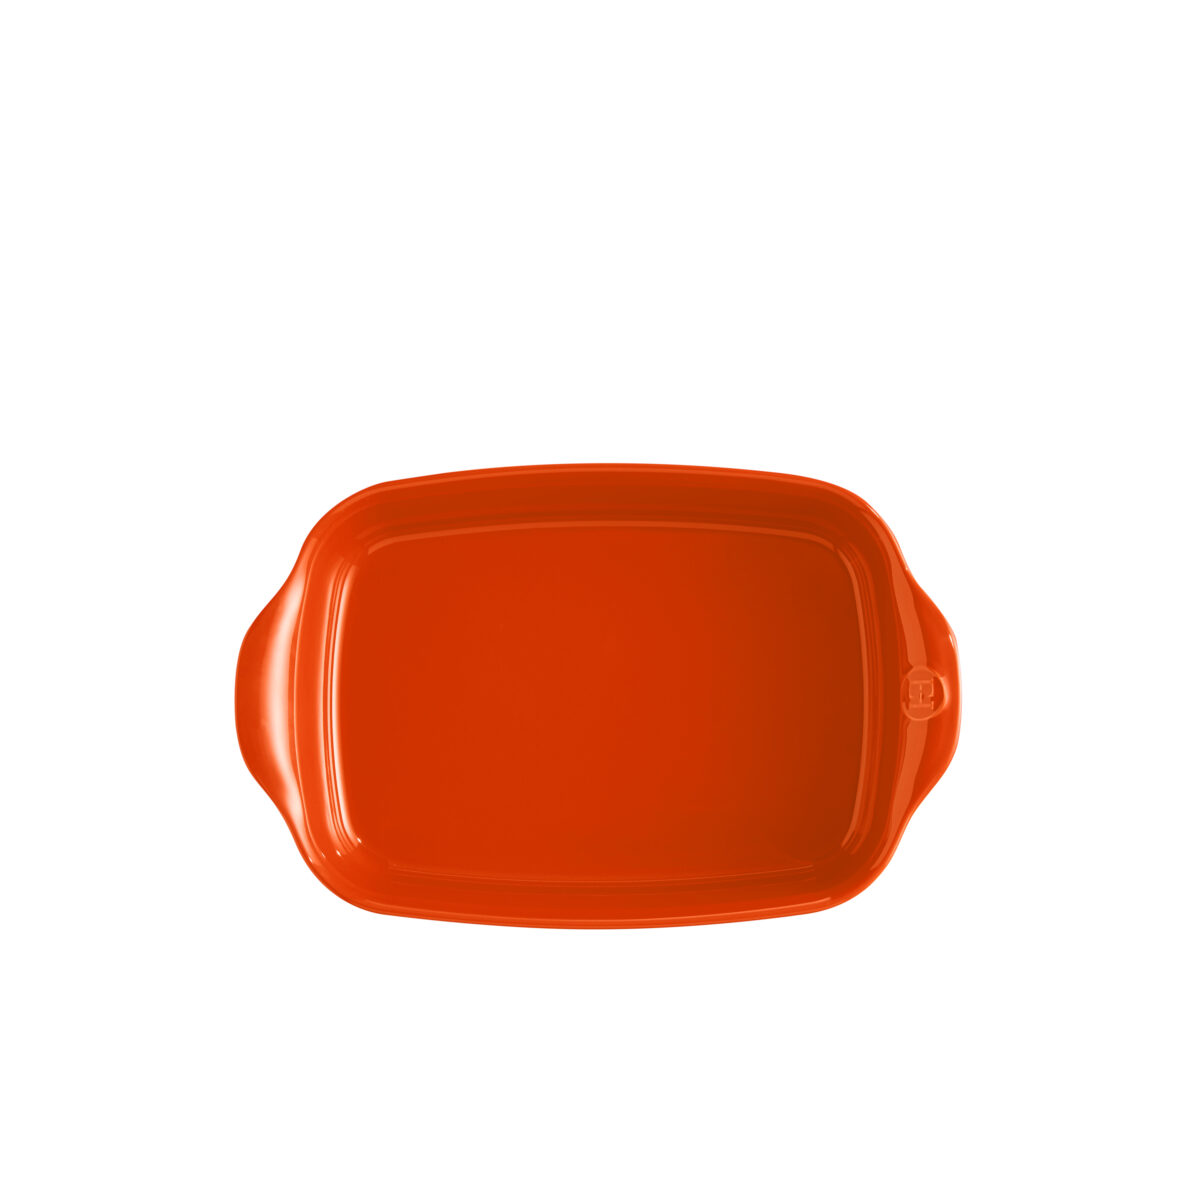 Керамична тава EMILE HENRY SMALL RECTANGULAR OVEN DISH - 30 х 19 см, цвят оранжев